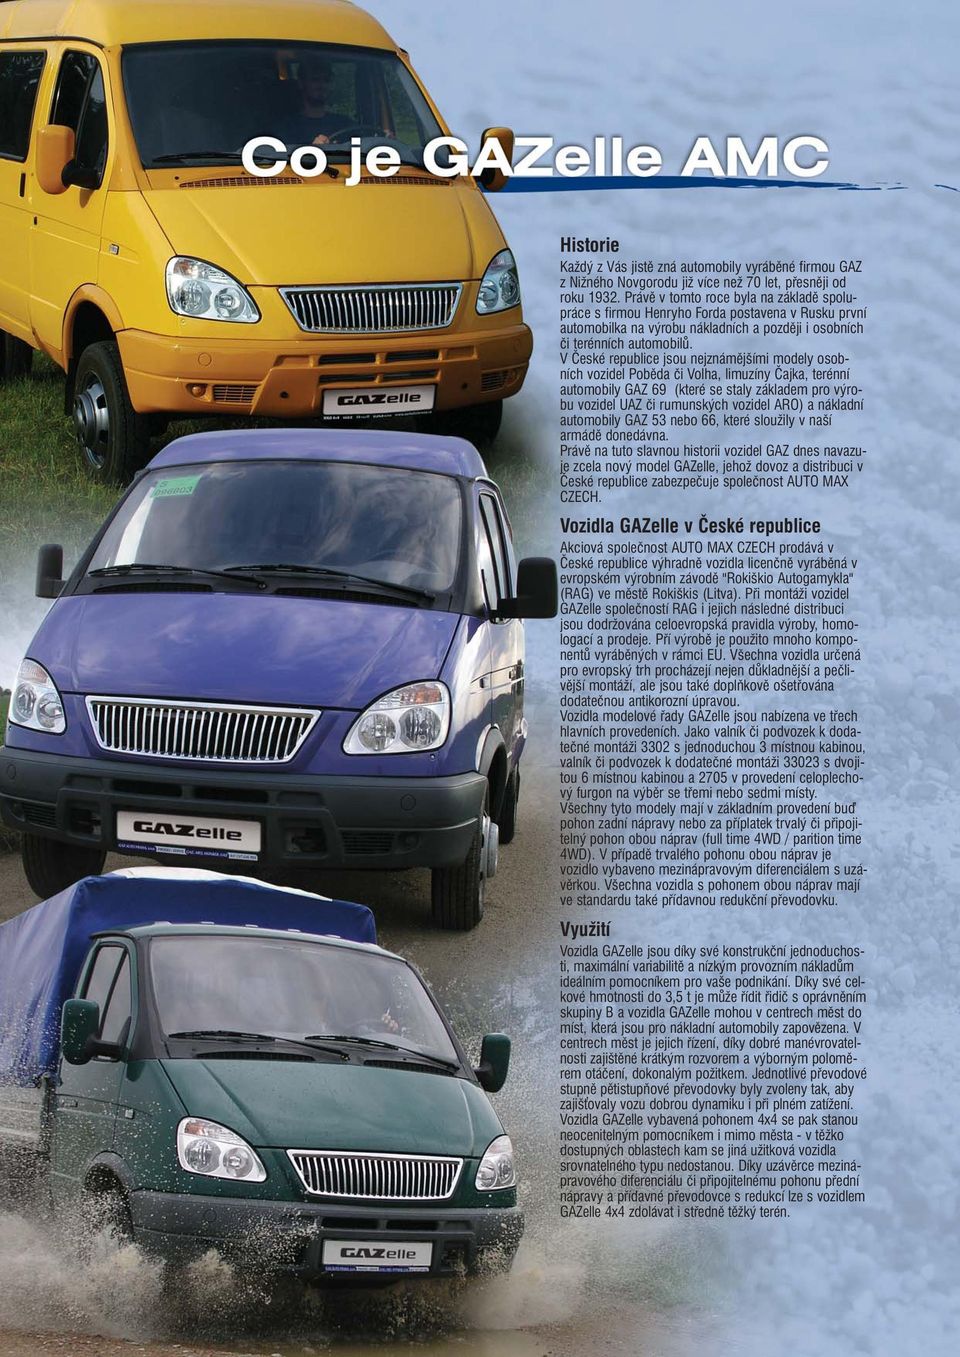 V České republice jsou nejznámějšími modely osobních vozidel Poběda či Volha, limuzíny Čajka, terénní automobily GAZ 69 (které se staly základem pro výrobu vozidel UAZ či rumunských vozidel ARO) a